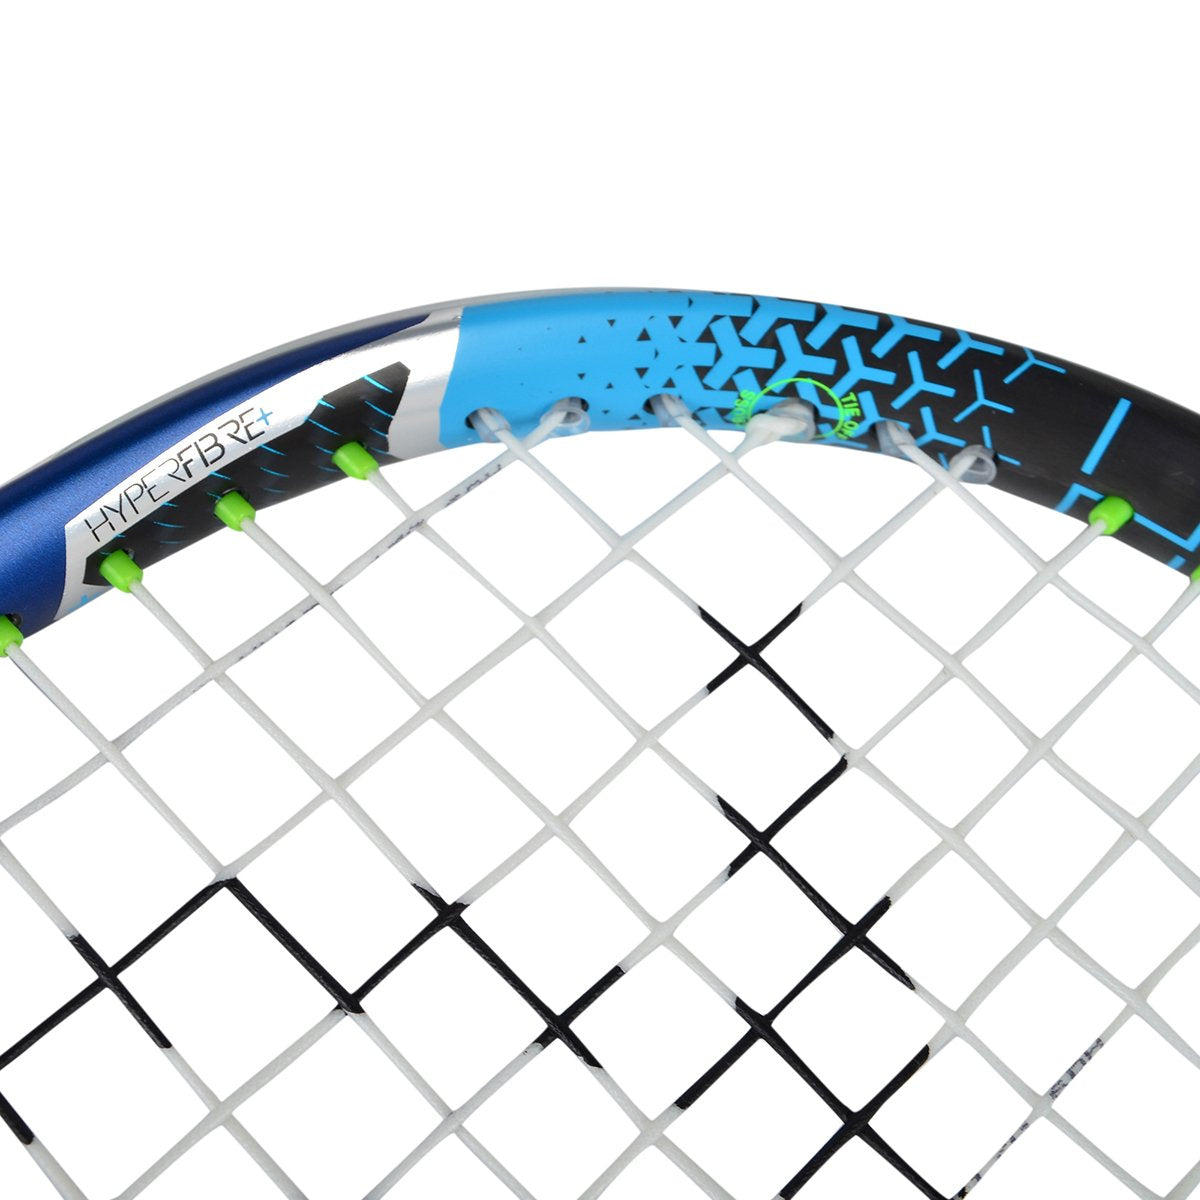 Dunlop Hyper Fibre Evolution Pro Squash Racquet HL 773252